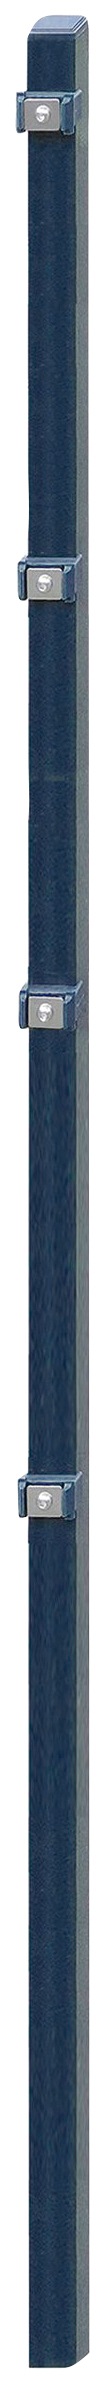 Arvotec Zaunpfosten "ESSENTIAL 160", 4x4x220 cm für Mattenhöhe 160 cm, zum günstig online kaufen